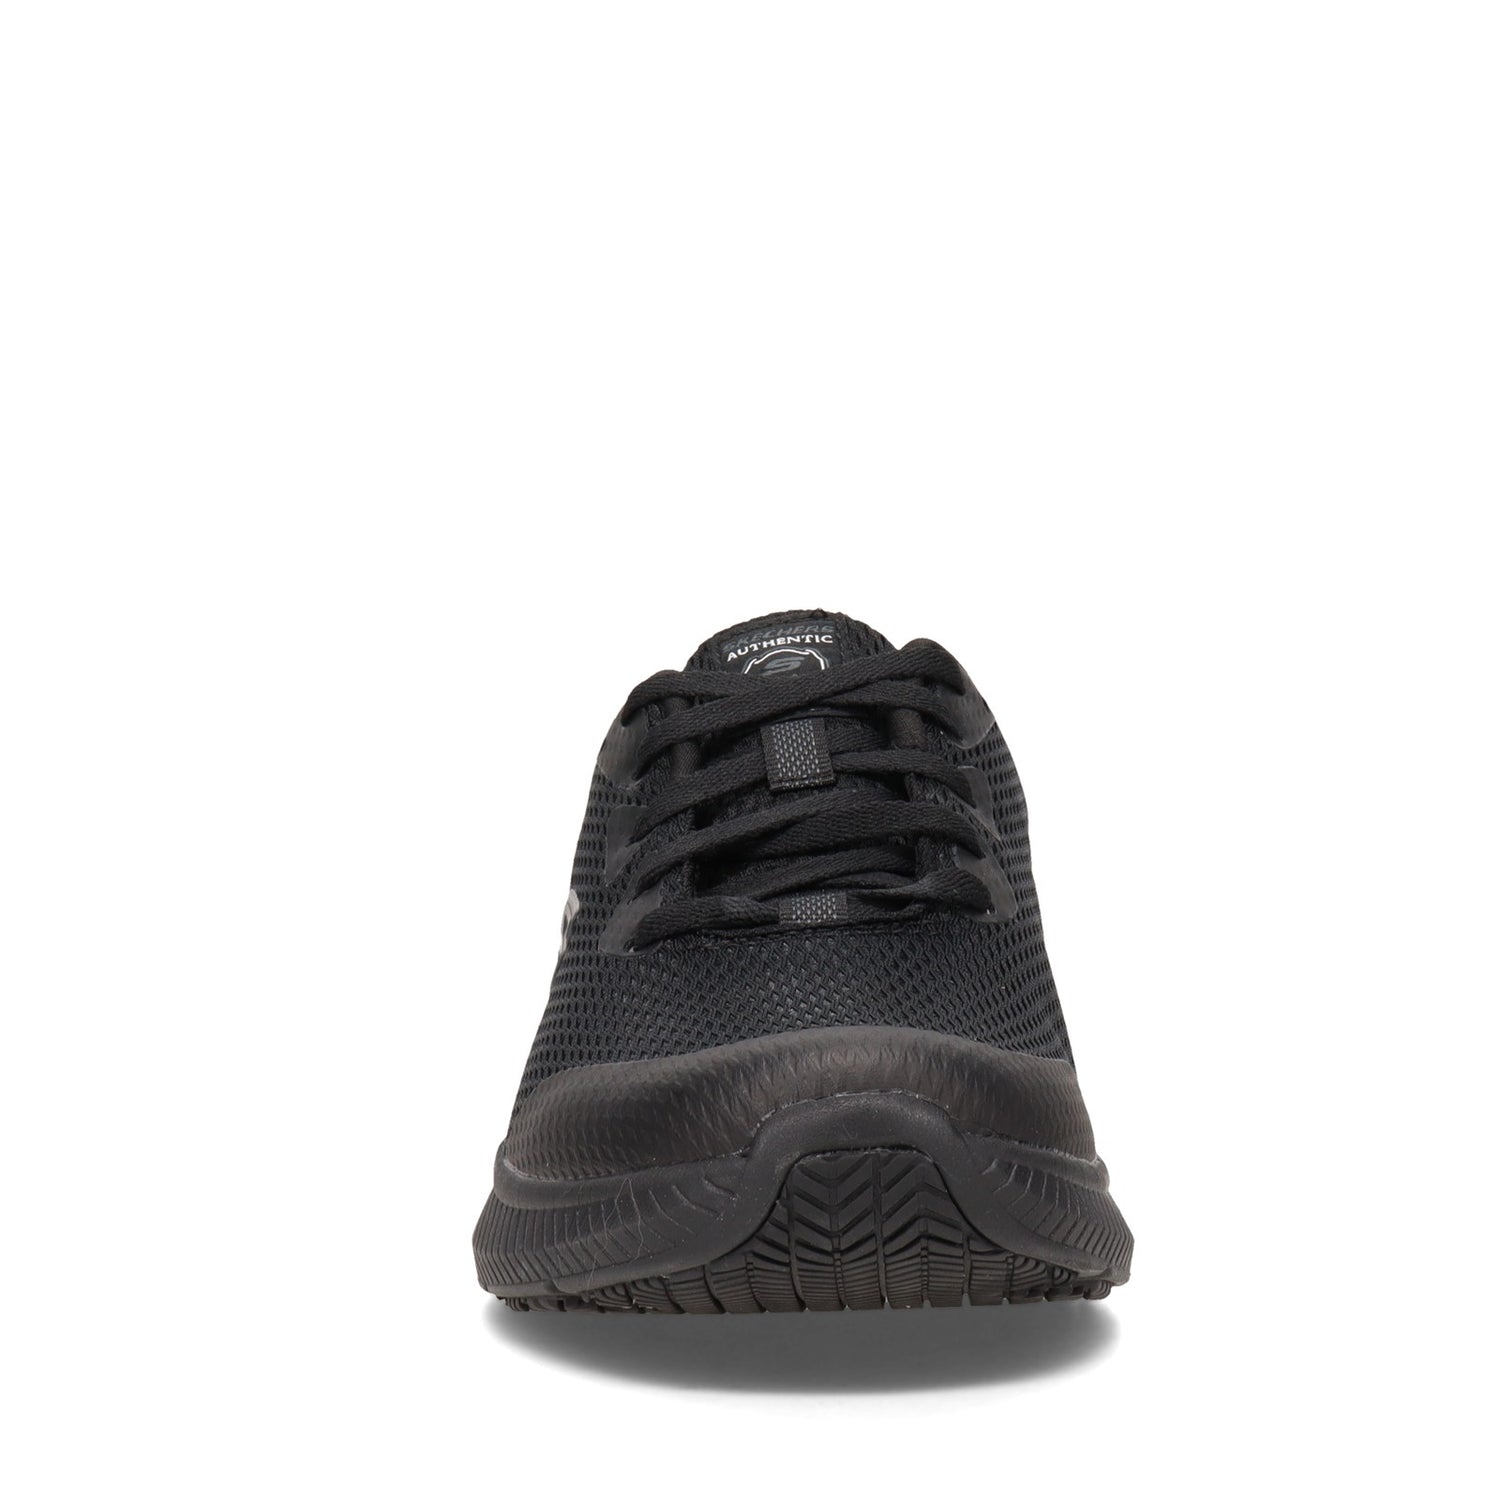 Peltz Shoes  Men's Skechers Work Relaxed Fit: DynaAir SR Work Shoe Black 77520-BLK